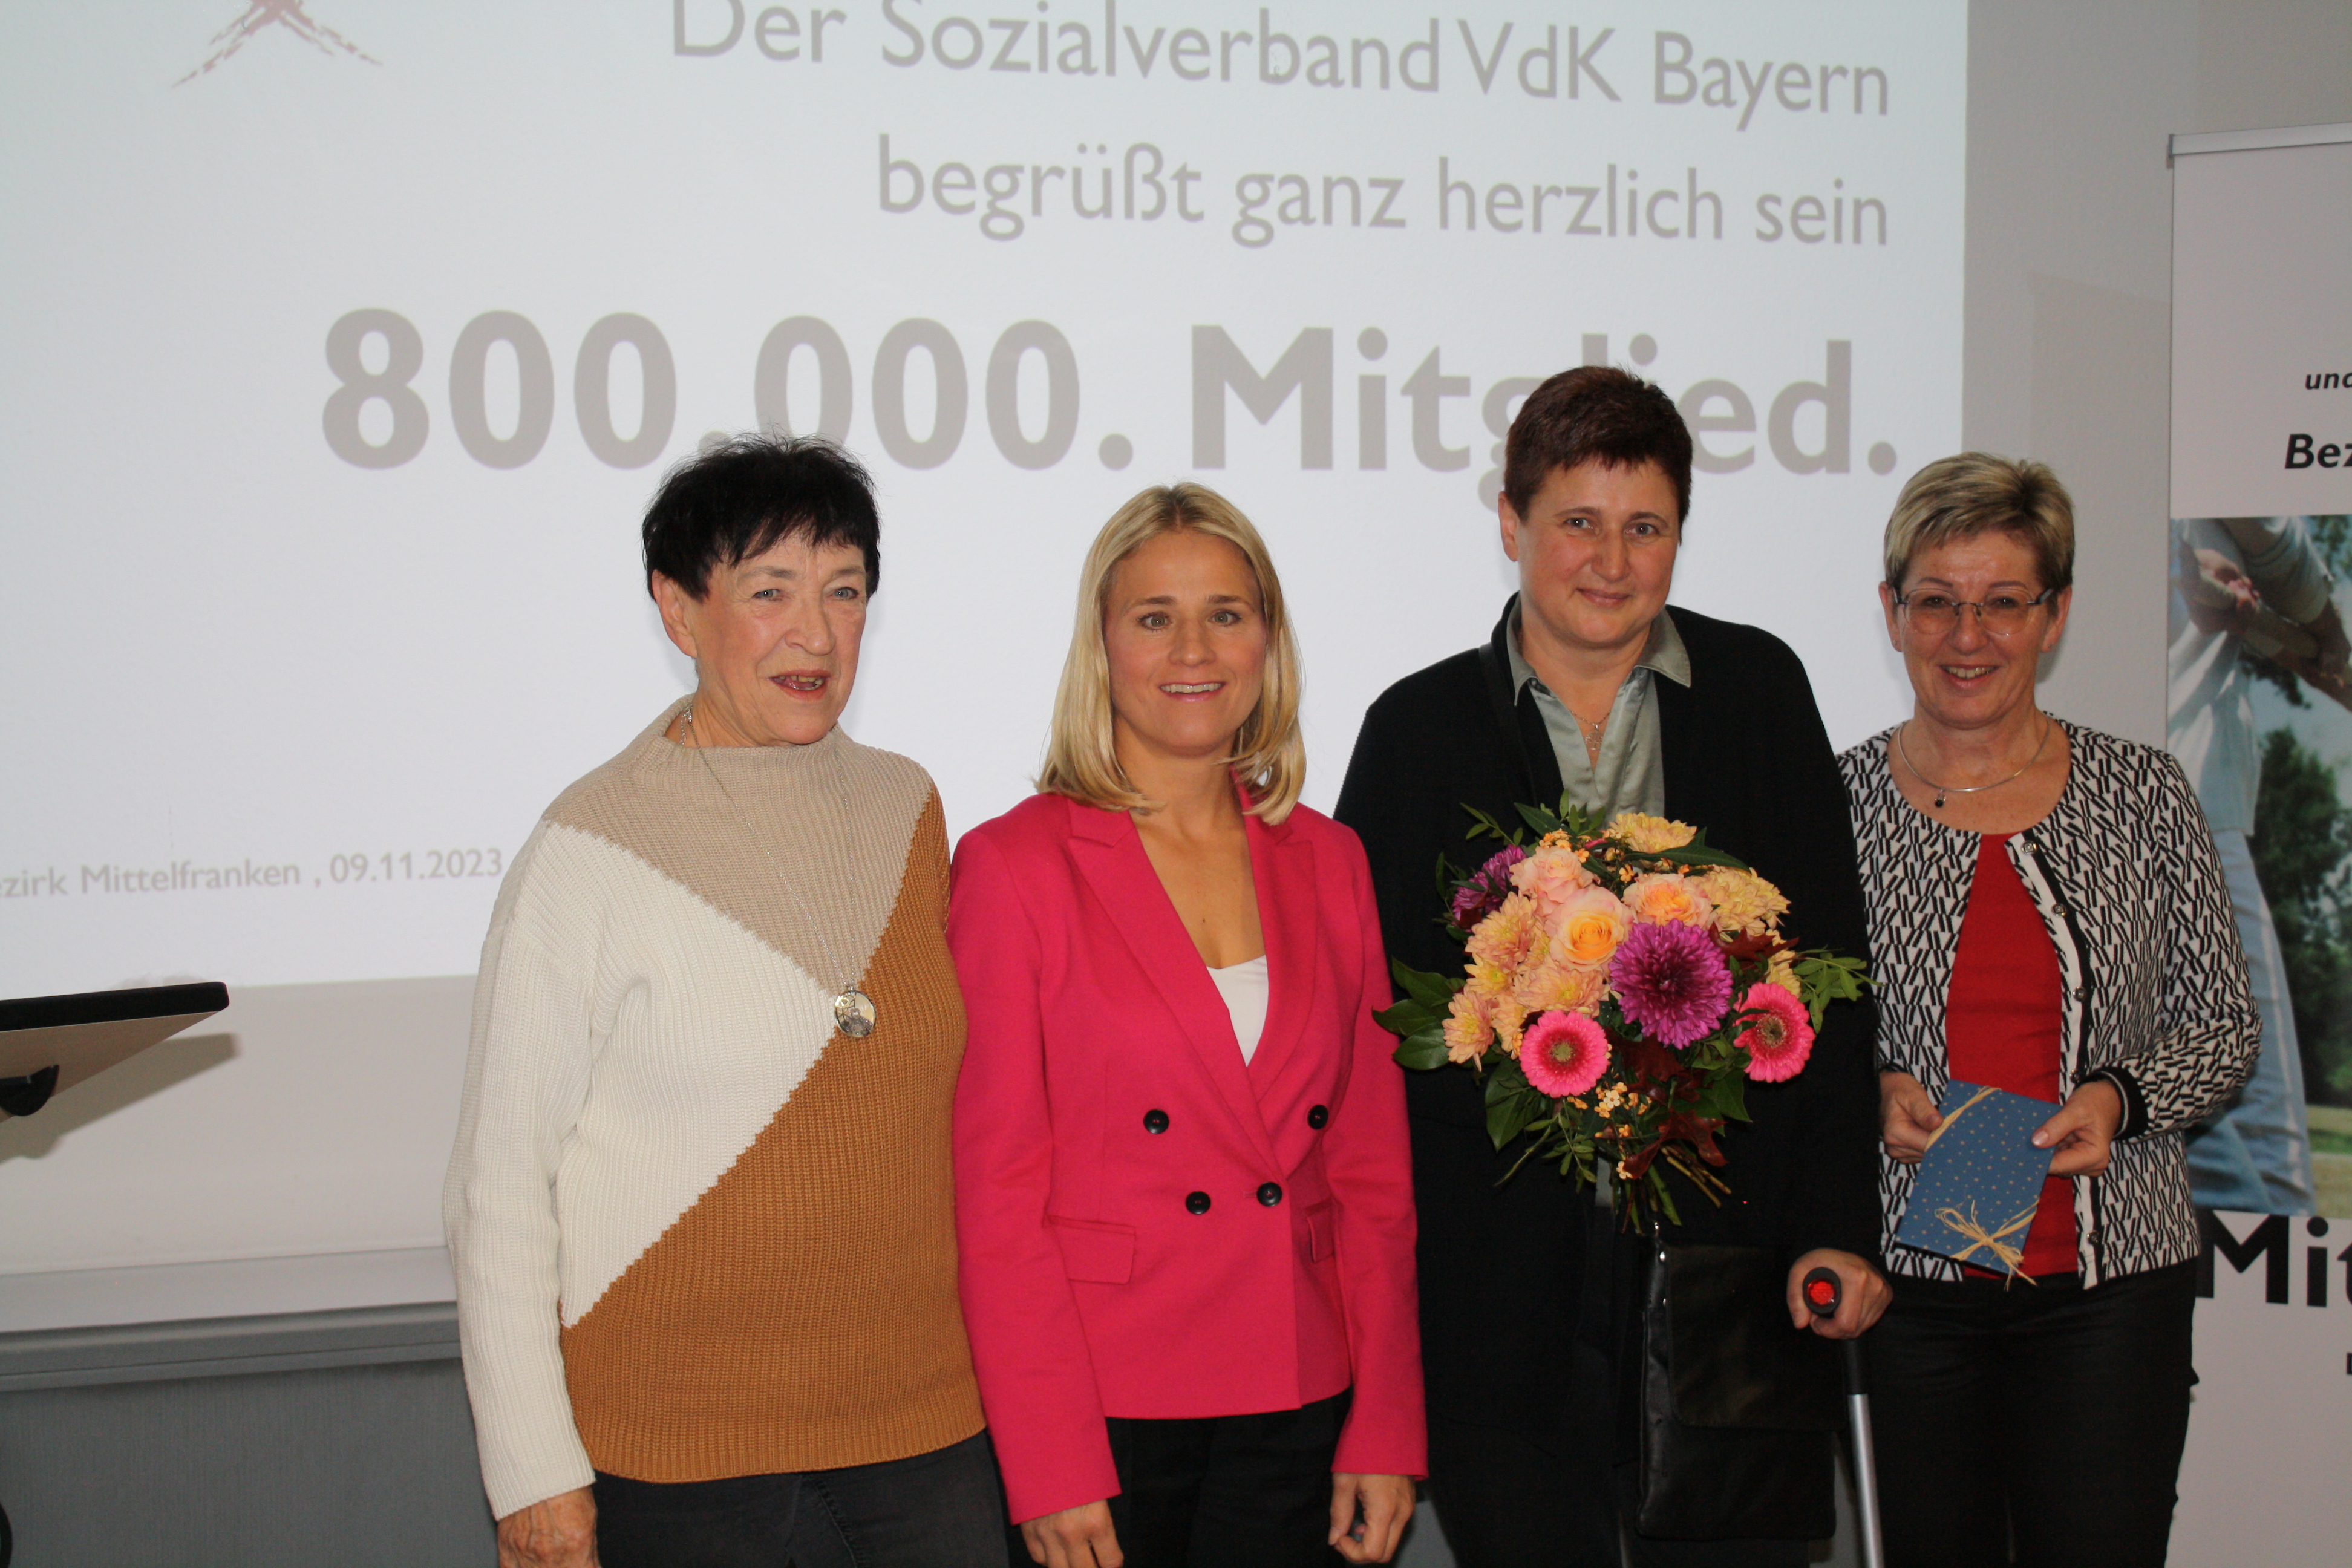 Auf dem Foto sieht man (von links): VdK-Kreisvorsitzende Ursula Häcker, VdK-Landesvorsitzende Verena Bentele, Jubiläumsmitglied Andrea Pompetzki und VdK-Kreisgeschäftsführerin Andrea Estner.